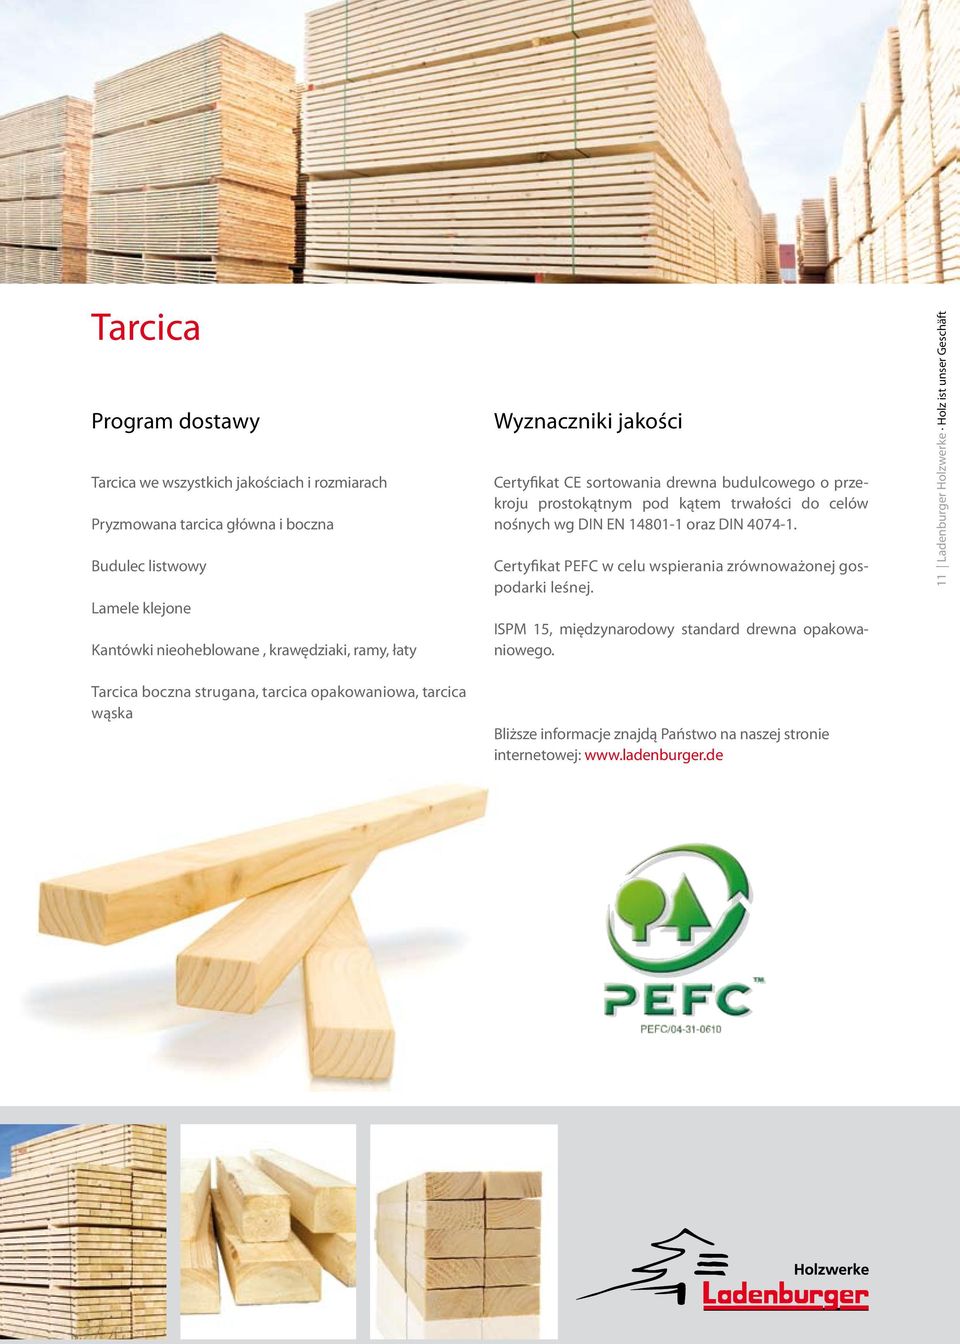 14801-1 oraz DIN 4074-1. Certyfikat PEFC w celu wspierania zrównoważonej gospodarki leśnej. ISPM 15, międzynarodowy standard drewna opakowaniowego.